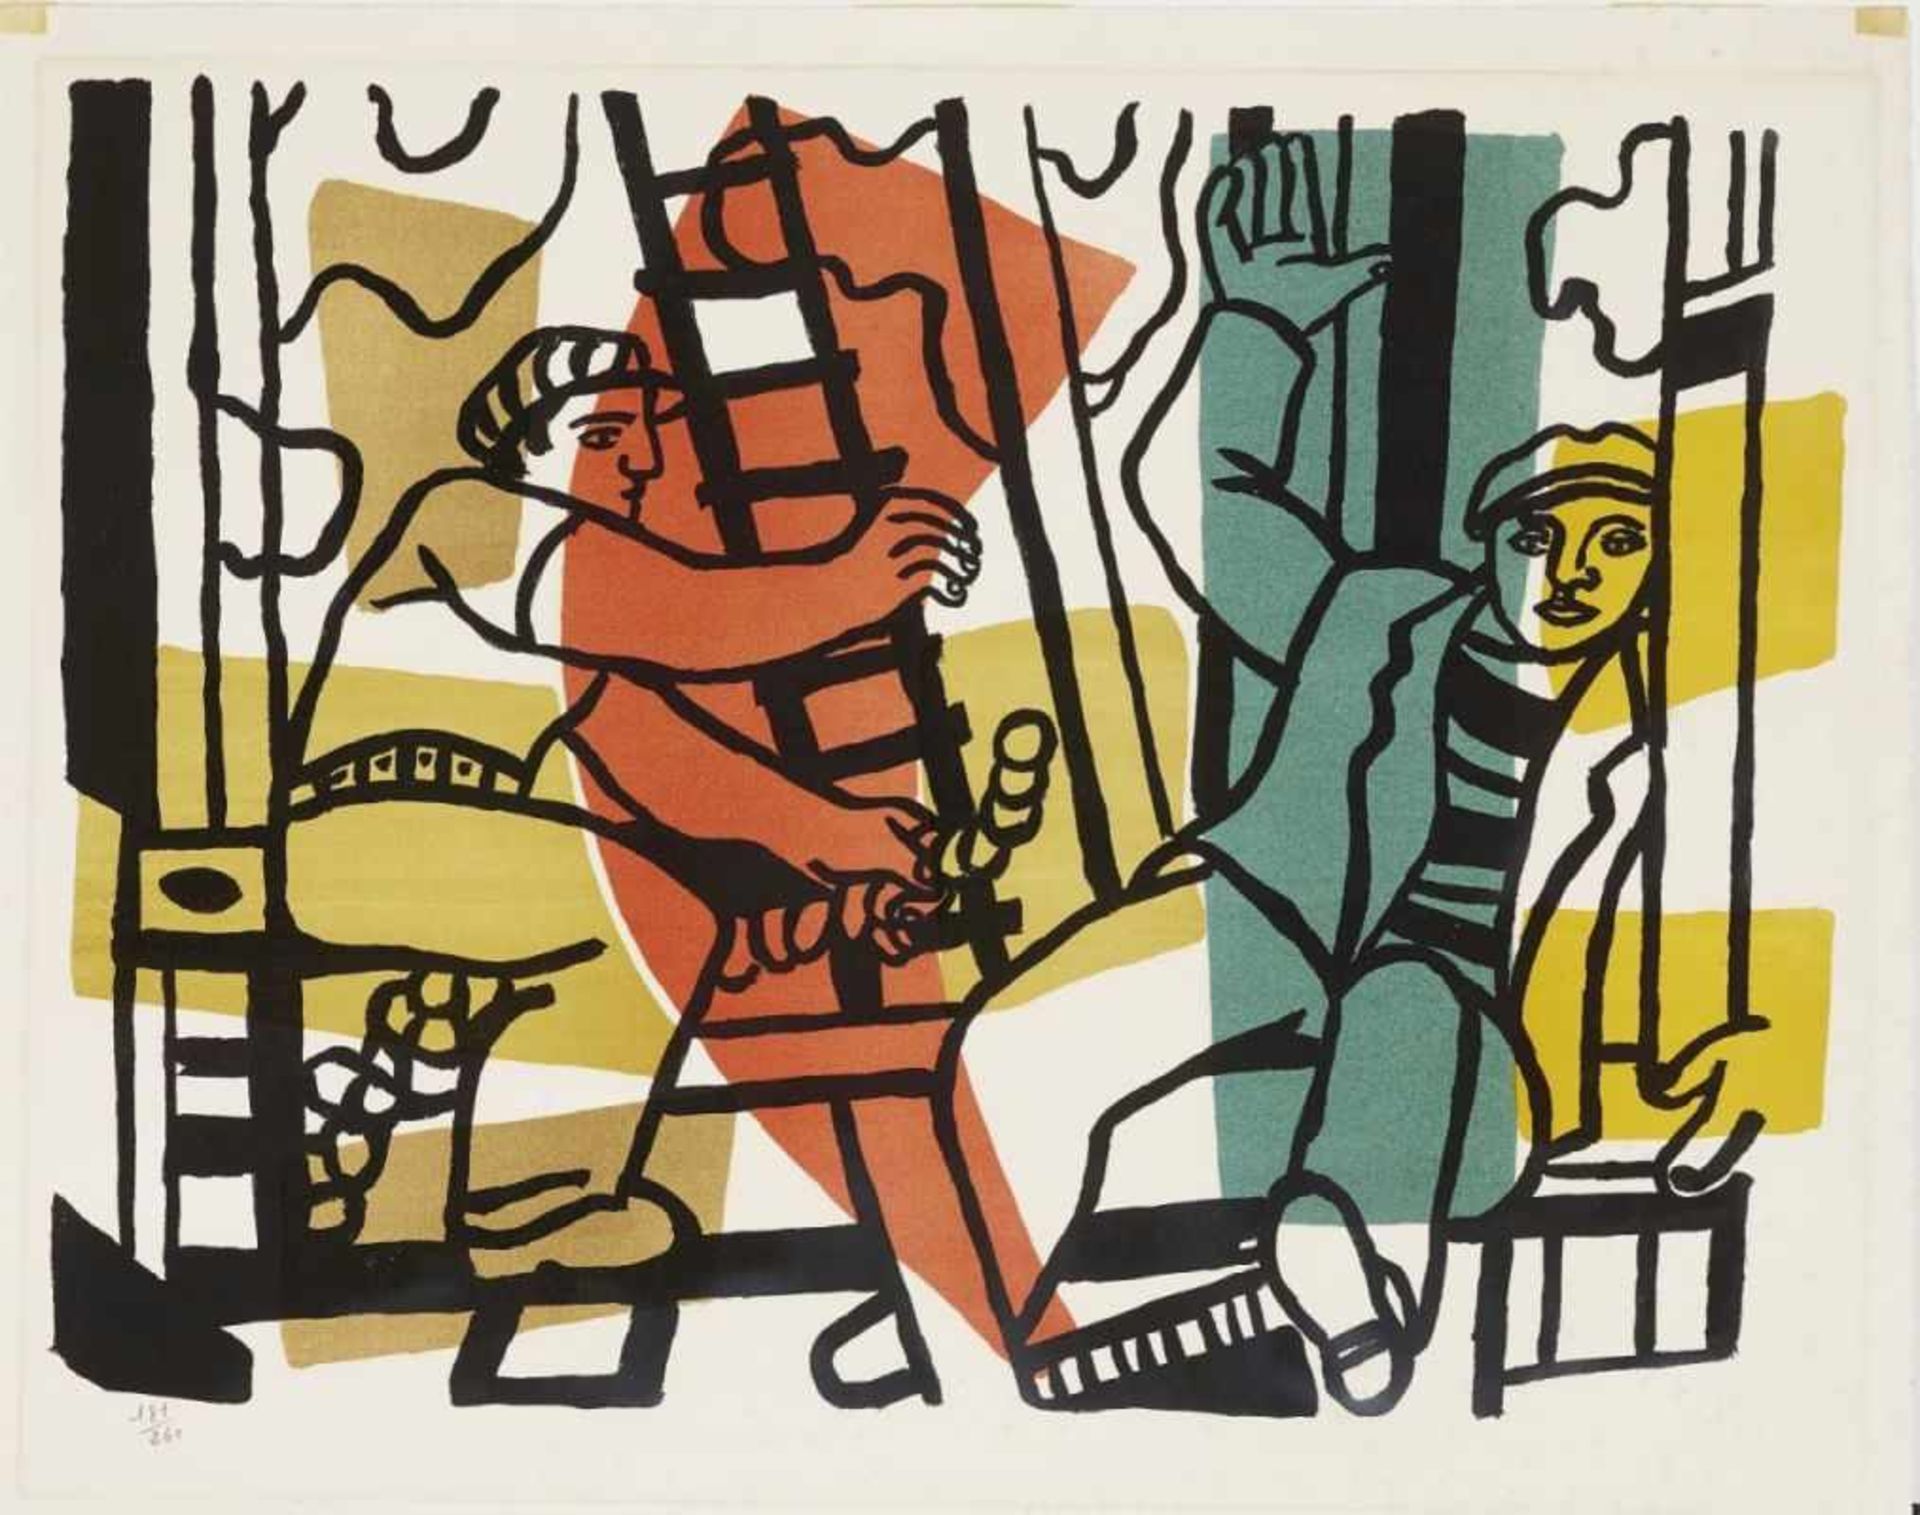 Léger, Fernand 1881 Argentan - 1955 Gif-sur-Yvette Les constructeurs. 1955 Farblithographie auf